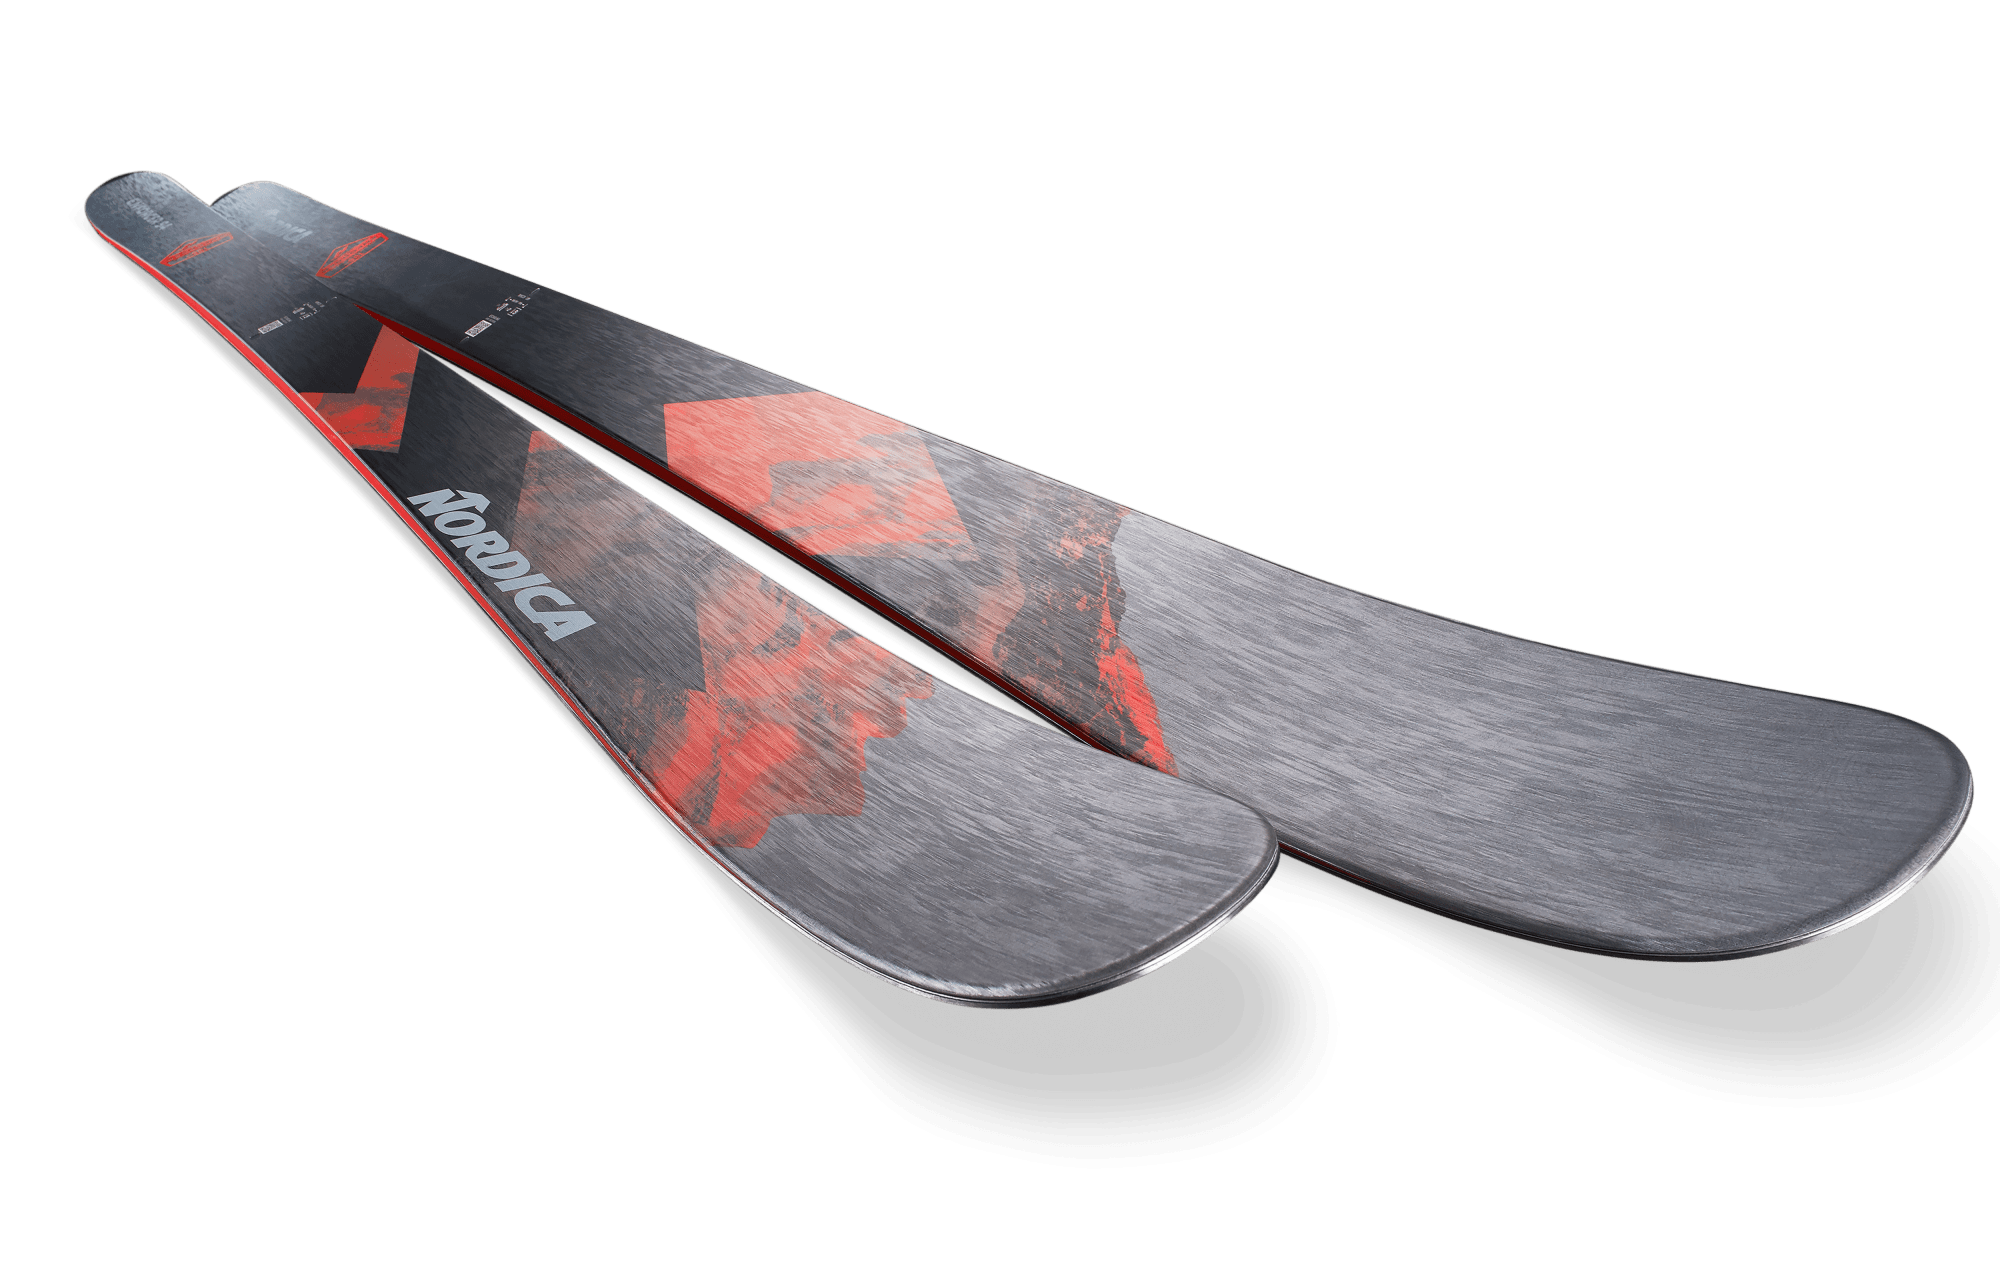 Nordica Enforcer 94 Skis · 2023 · 186 cm